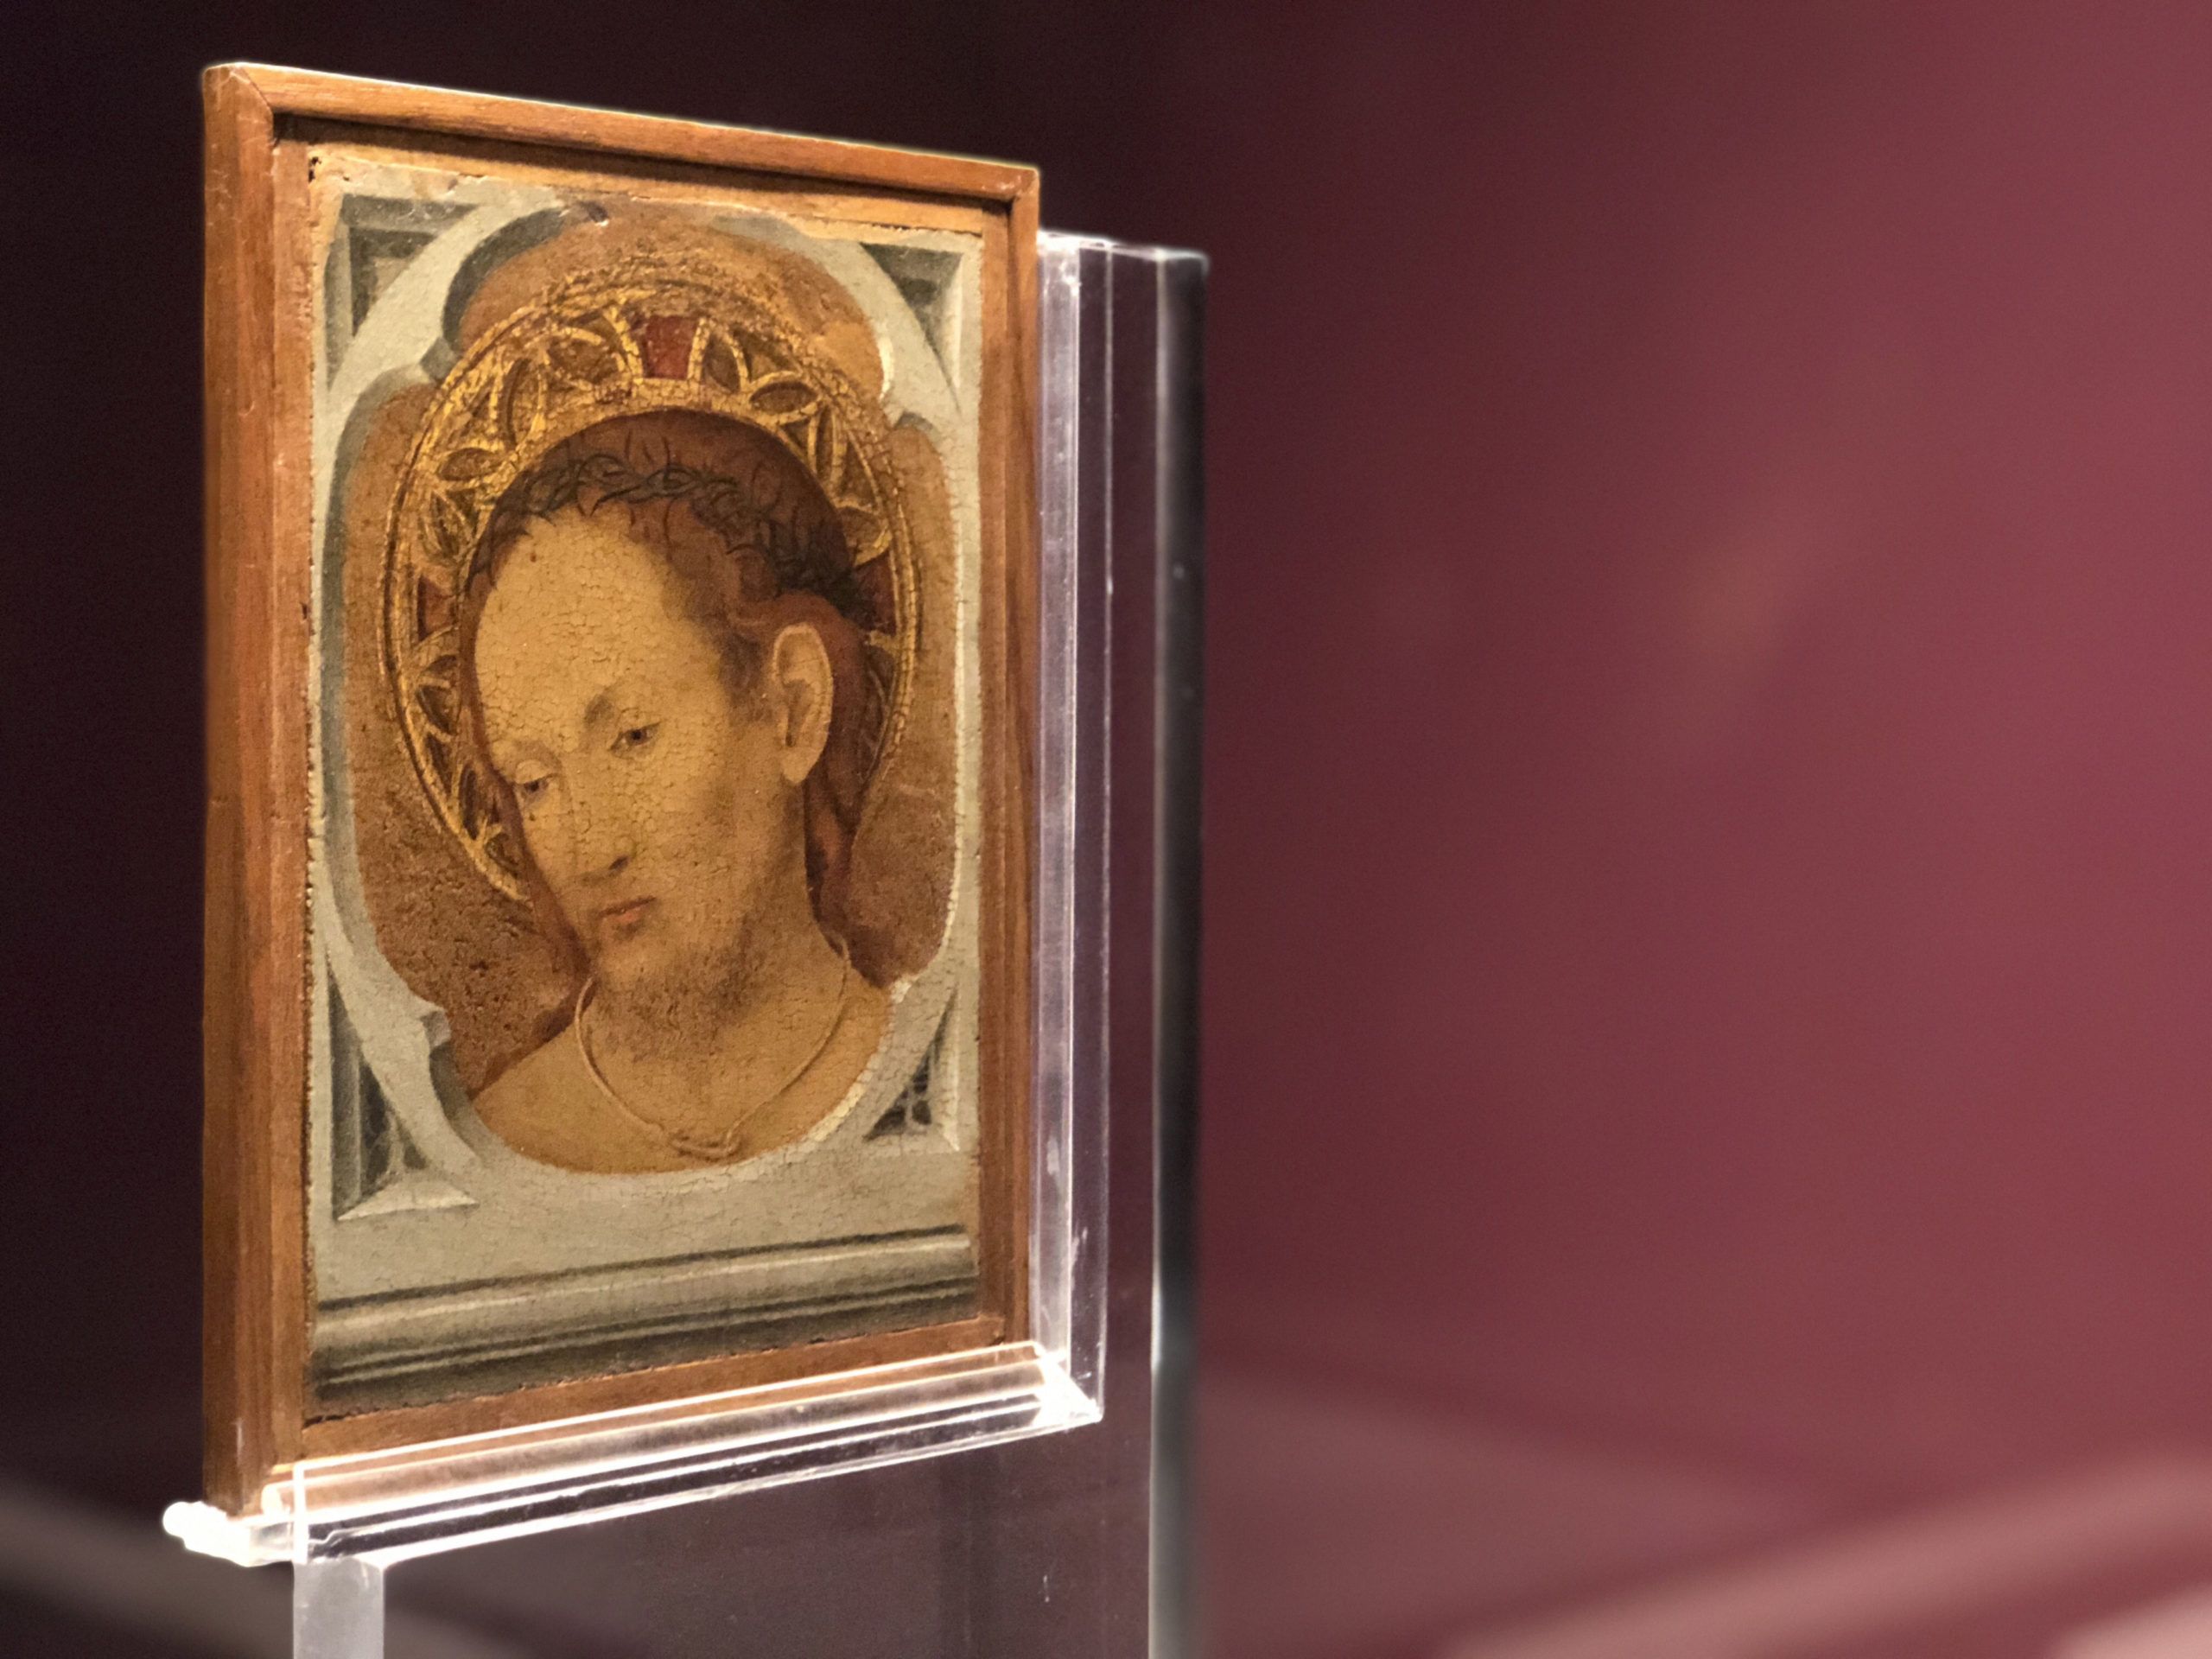 La mostra “Da Giotto a de Chirico” ospitata a Catania si arricchisce della “Tavola Bifronte” di Antonello da Messina